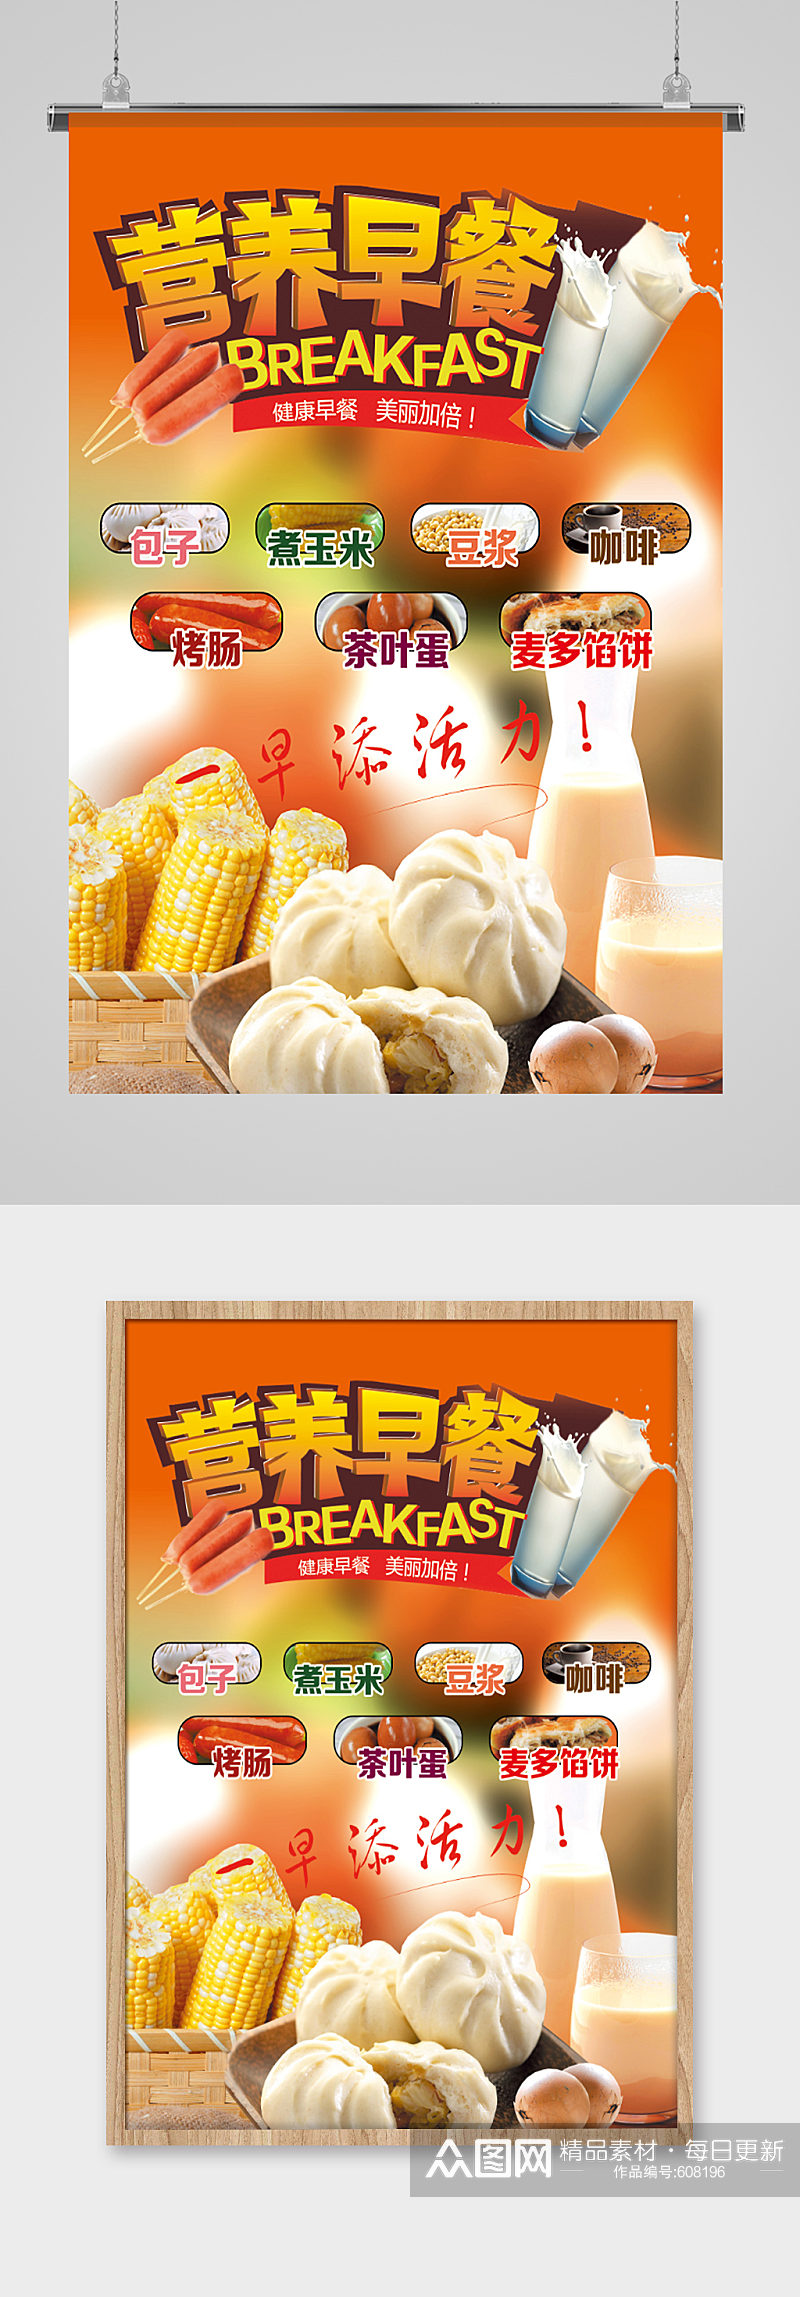 中式营养早餐展示海报素材